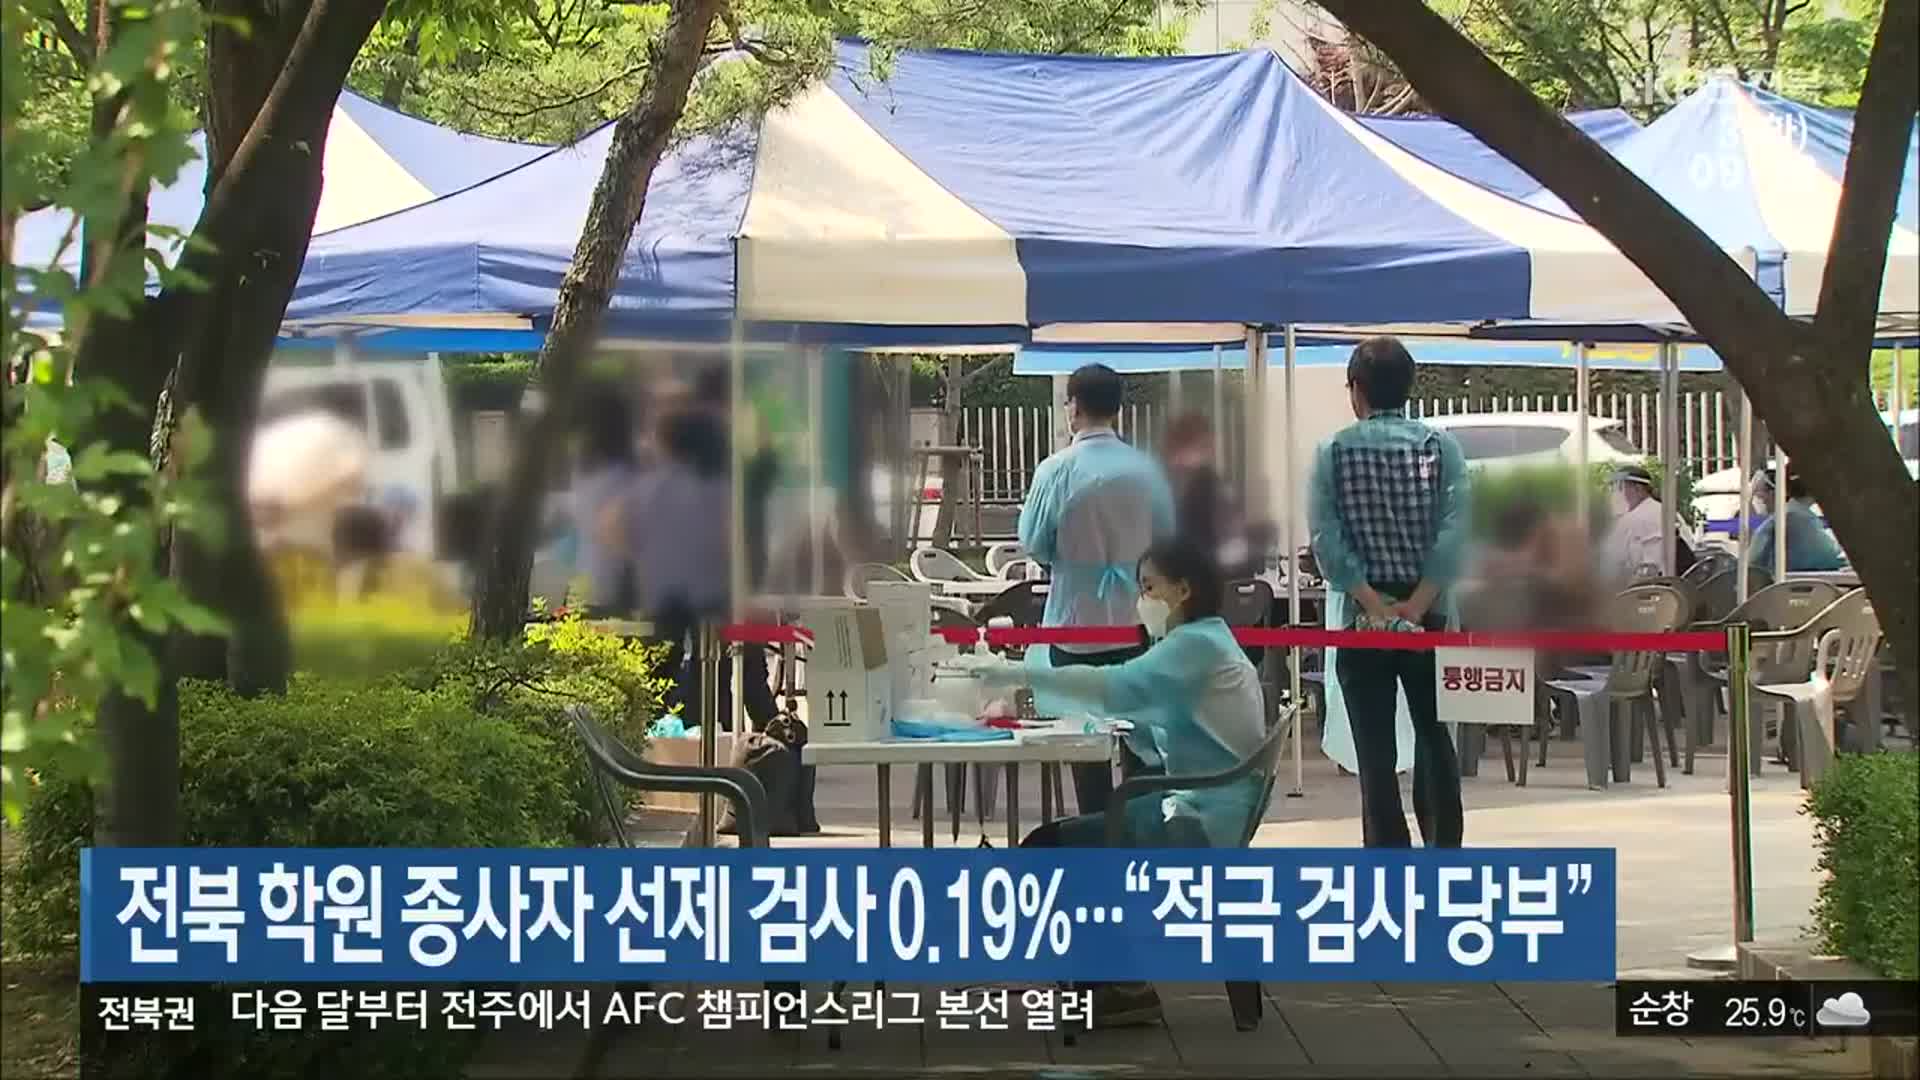 전북 학원 종사자 선제 검사 0.19%…“적극 검사 당부”